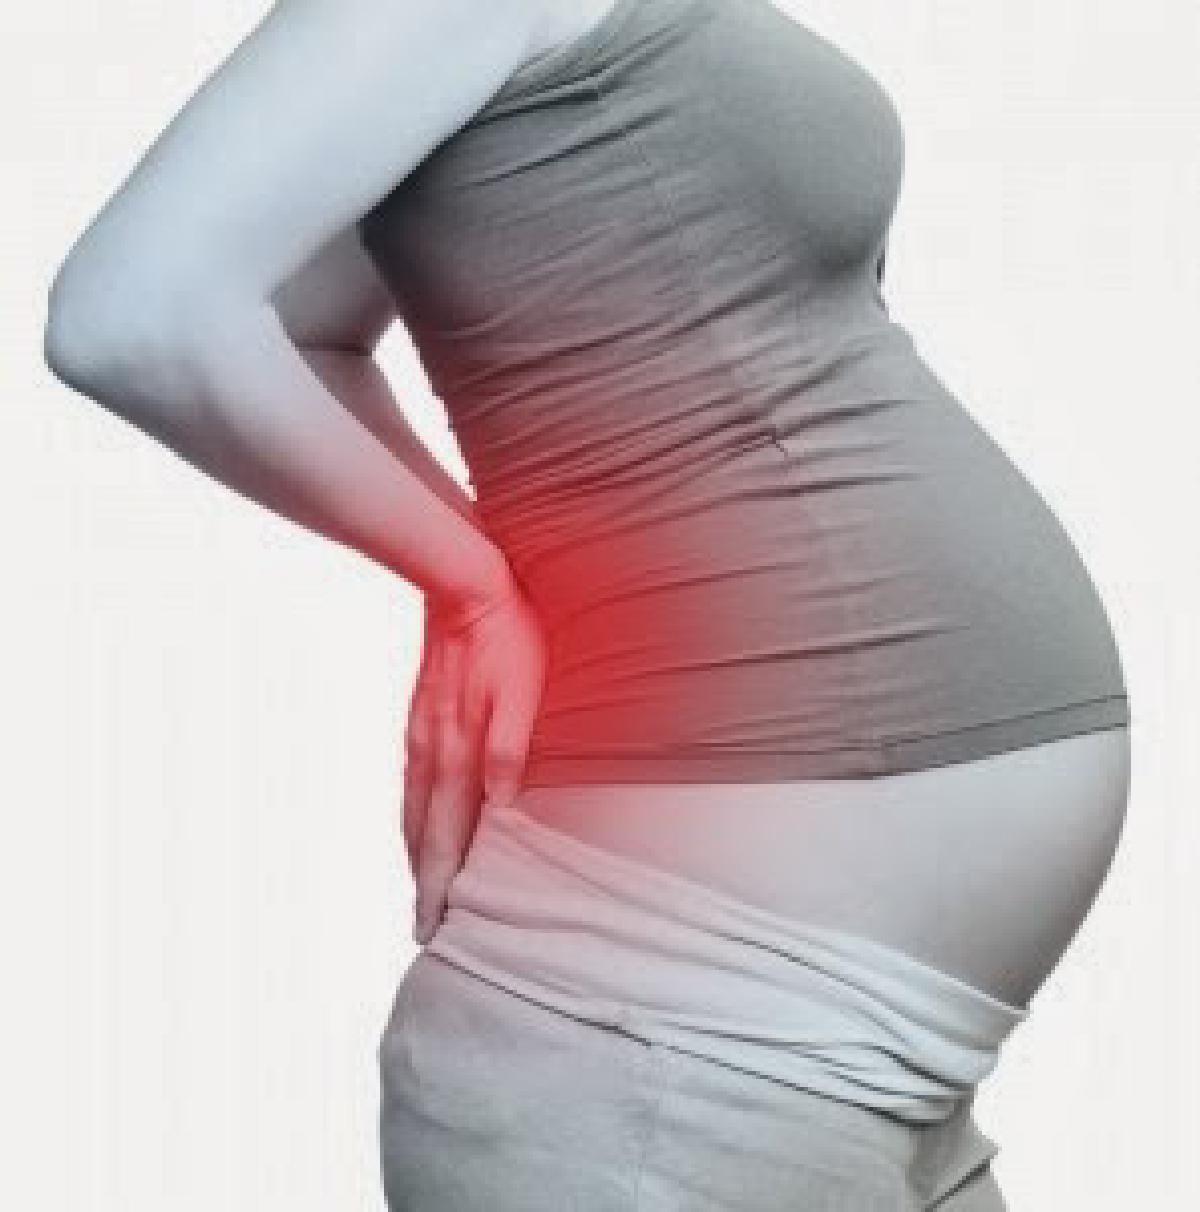 Ανακούφιση από το πόνο στη πλάτη και μέση κατά τη διάρκεια της εγκυμοσύνης